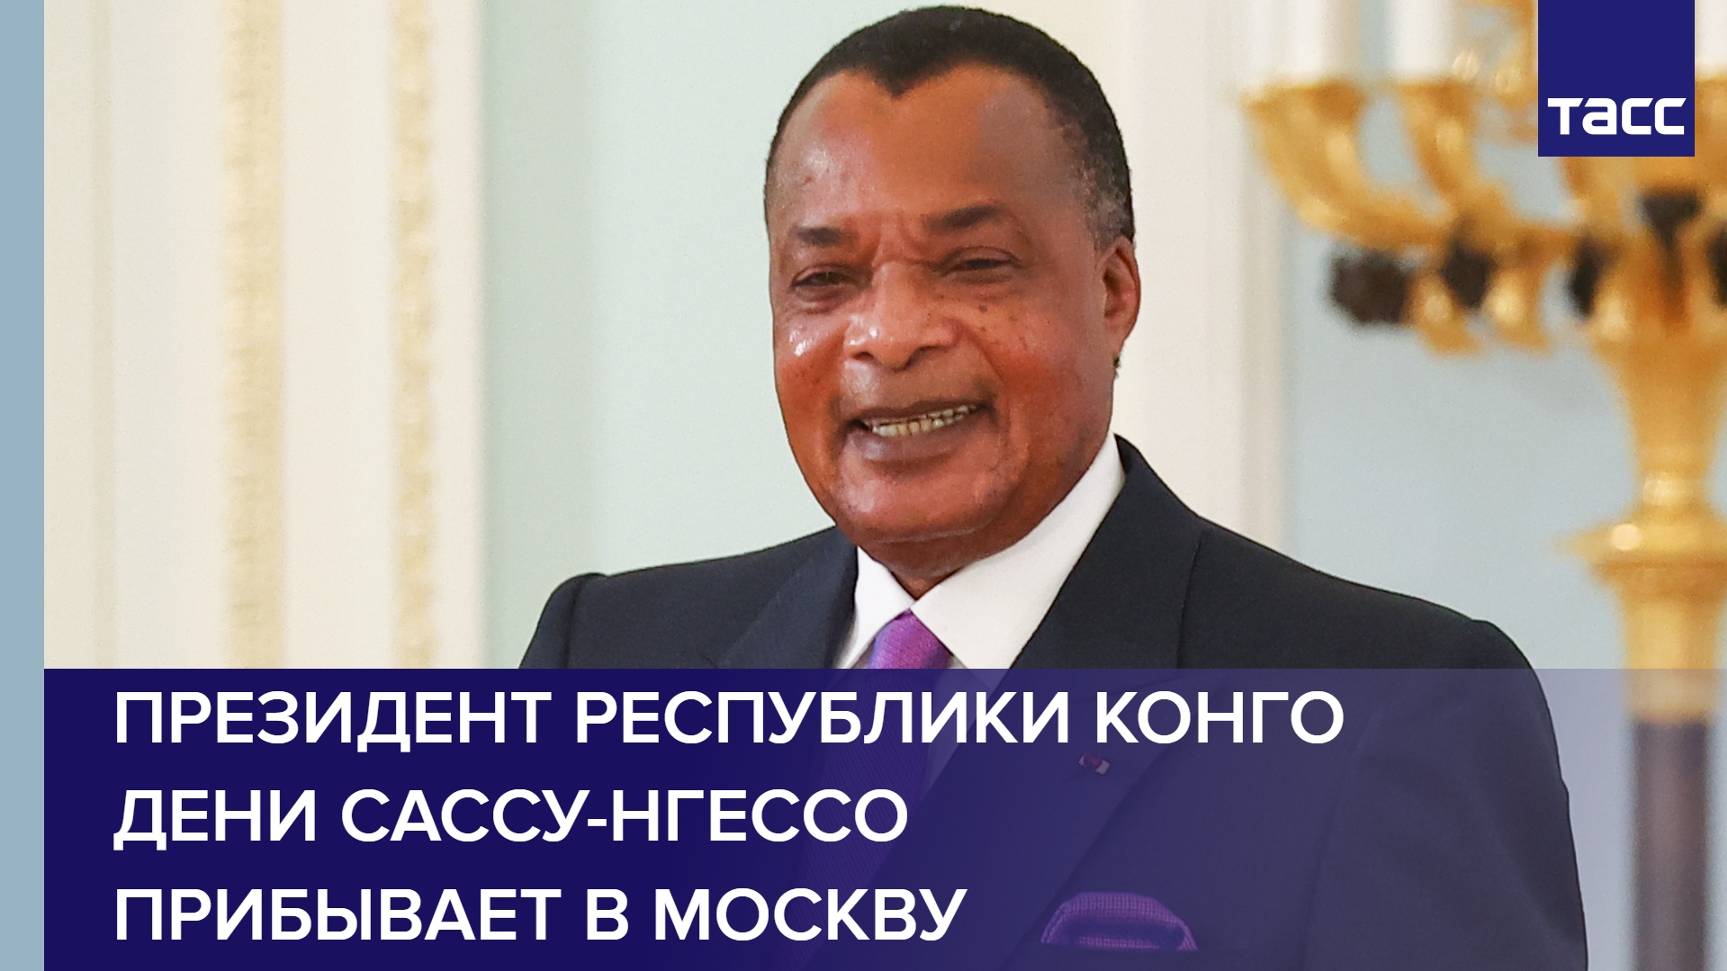 Президент Республики Конго  Дени Сассу-Нгессо прибывает в Москву